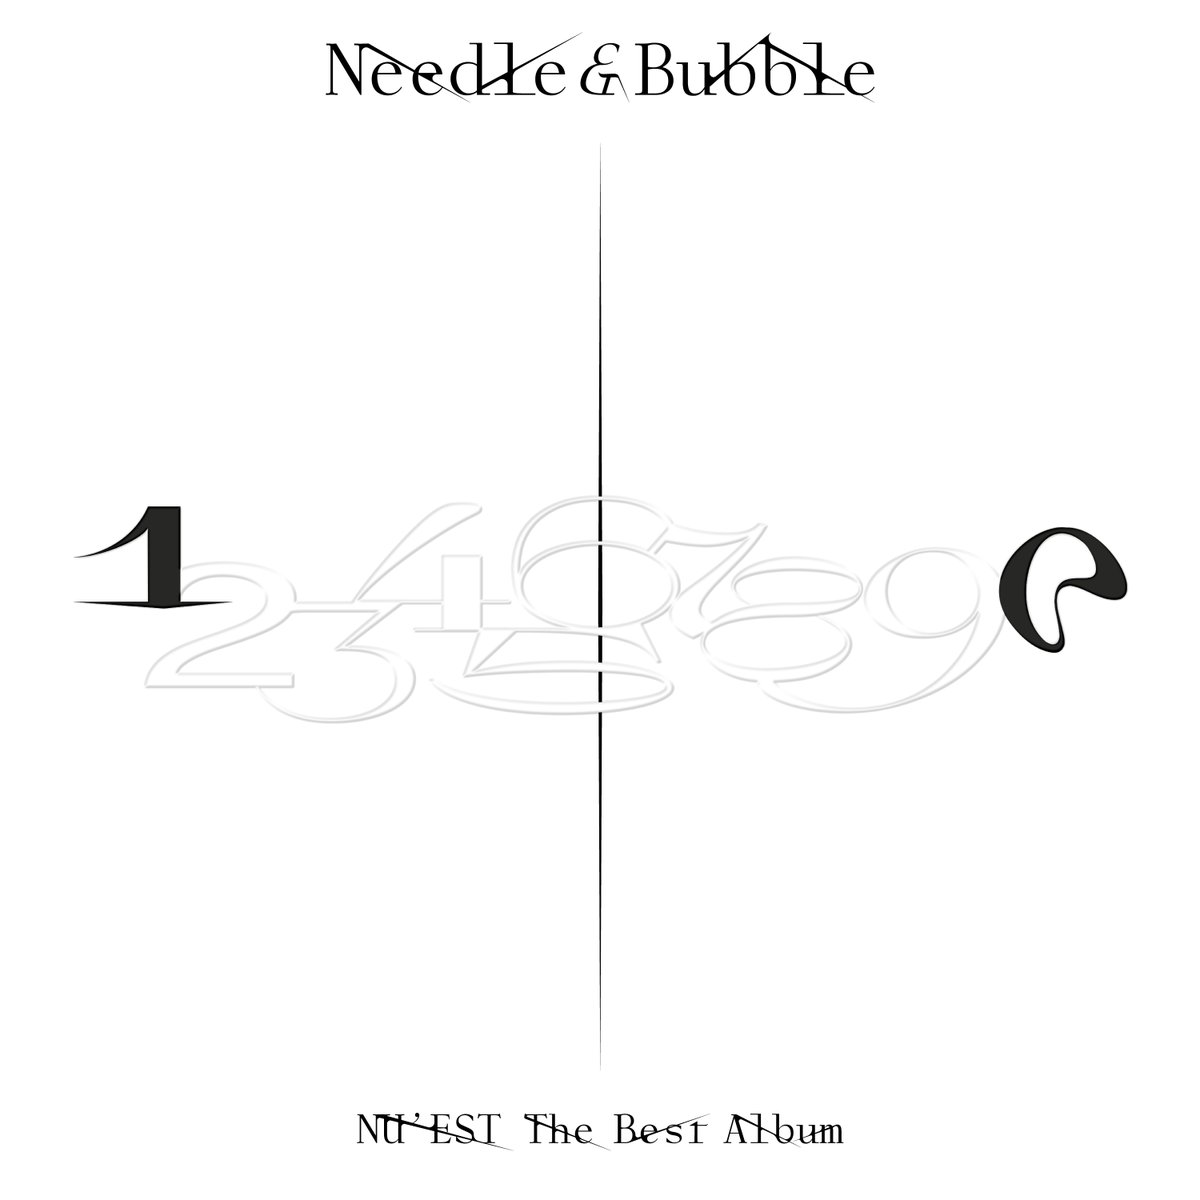 NU'EST The Best Album 'Needle & Bubble' Cover Image 🪄🔮 Title Track '다시, 봄' 🎧 2022.03.15 #NUEST_JR_아론_백호_민현_렌 #뉴이스트 #NUEST #Needle_n_Bubble #다시_봄 #NUEST_다시_봄 #20220315_6PM_KST